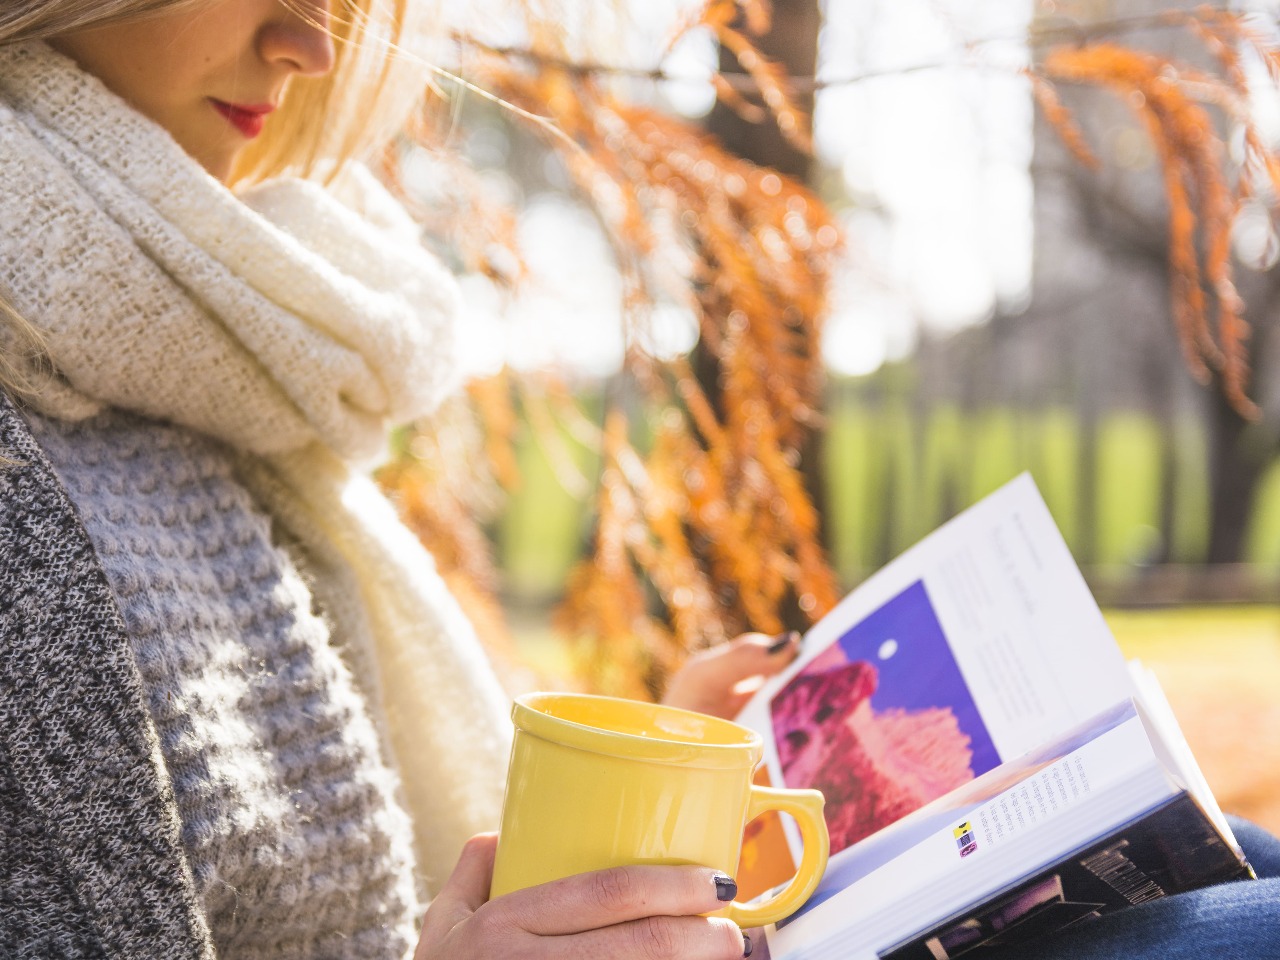 Femme en train de lire à l'extérieur avec une tasse.